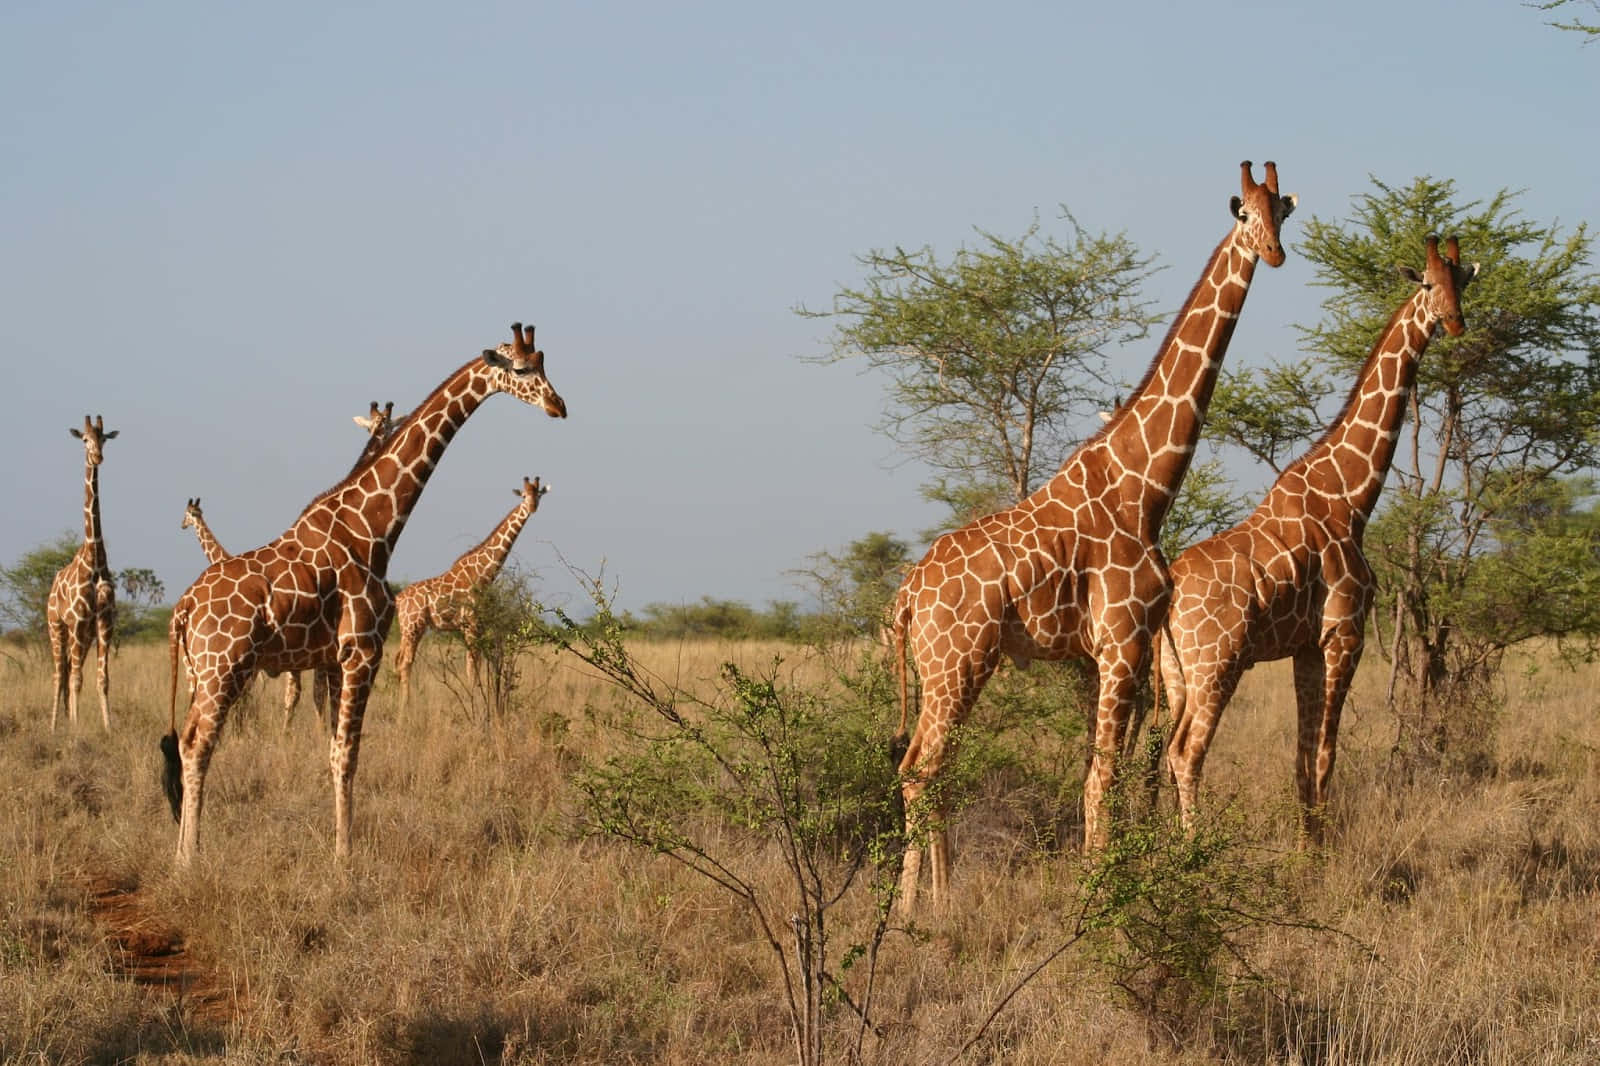 Caption: Majestic African Wildlife in Natural Habitat